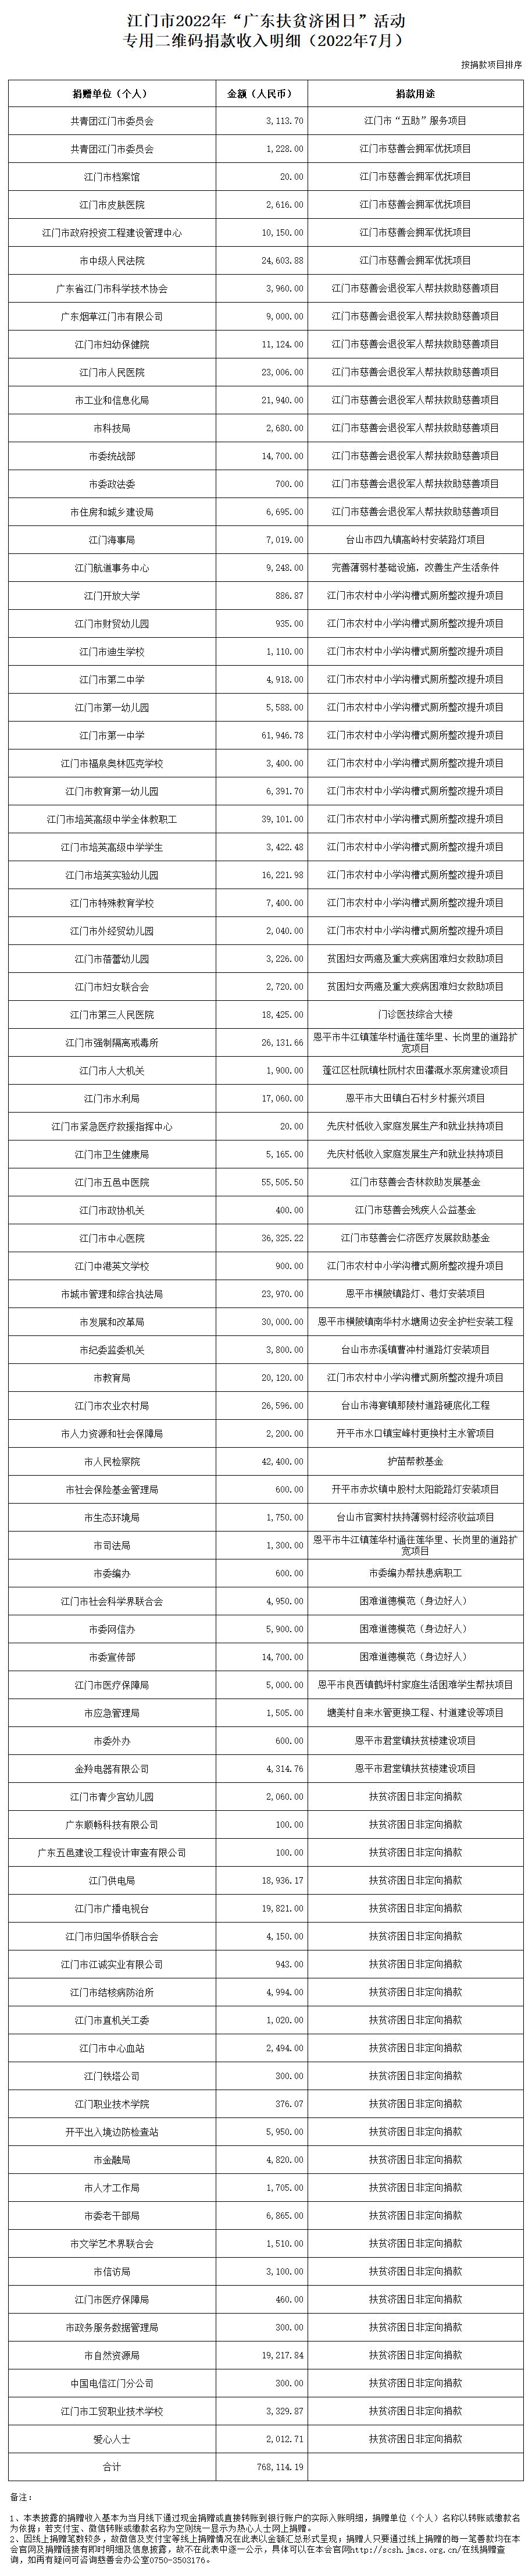 江门市2022年“广东扶贫济困日”活动专用二维码捐款收入明细（2022年7月）.jpg